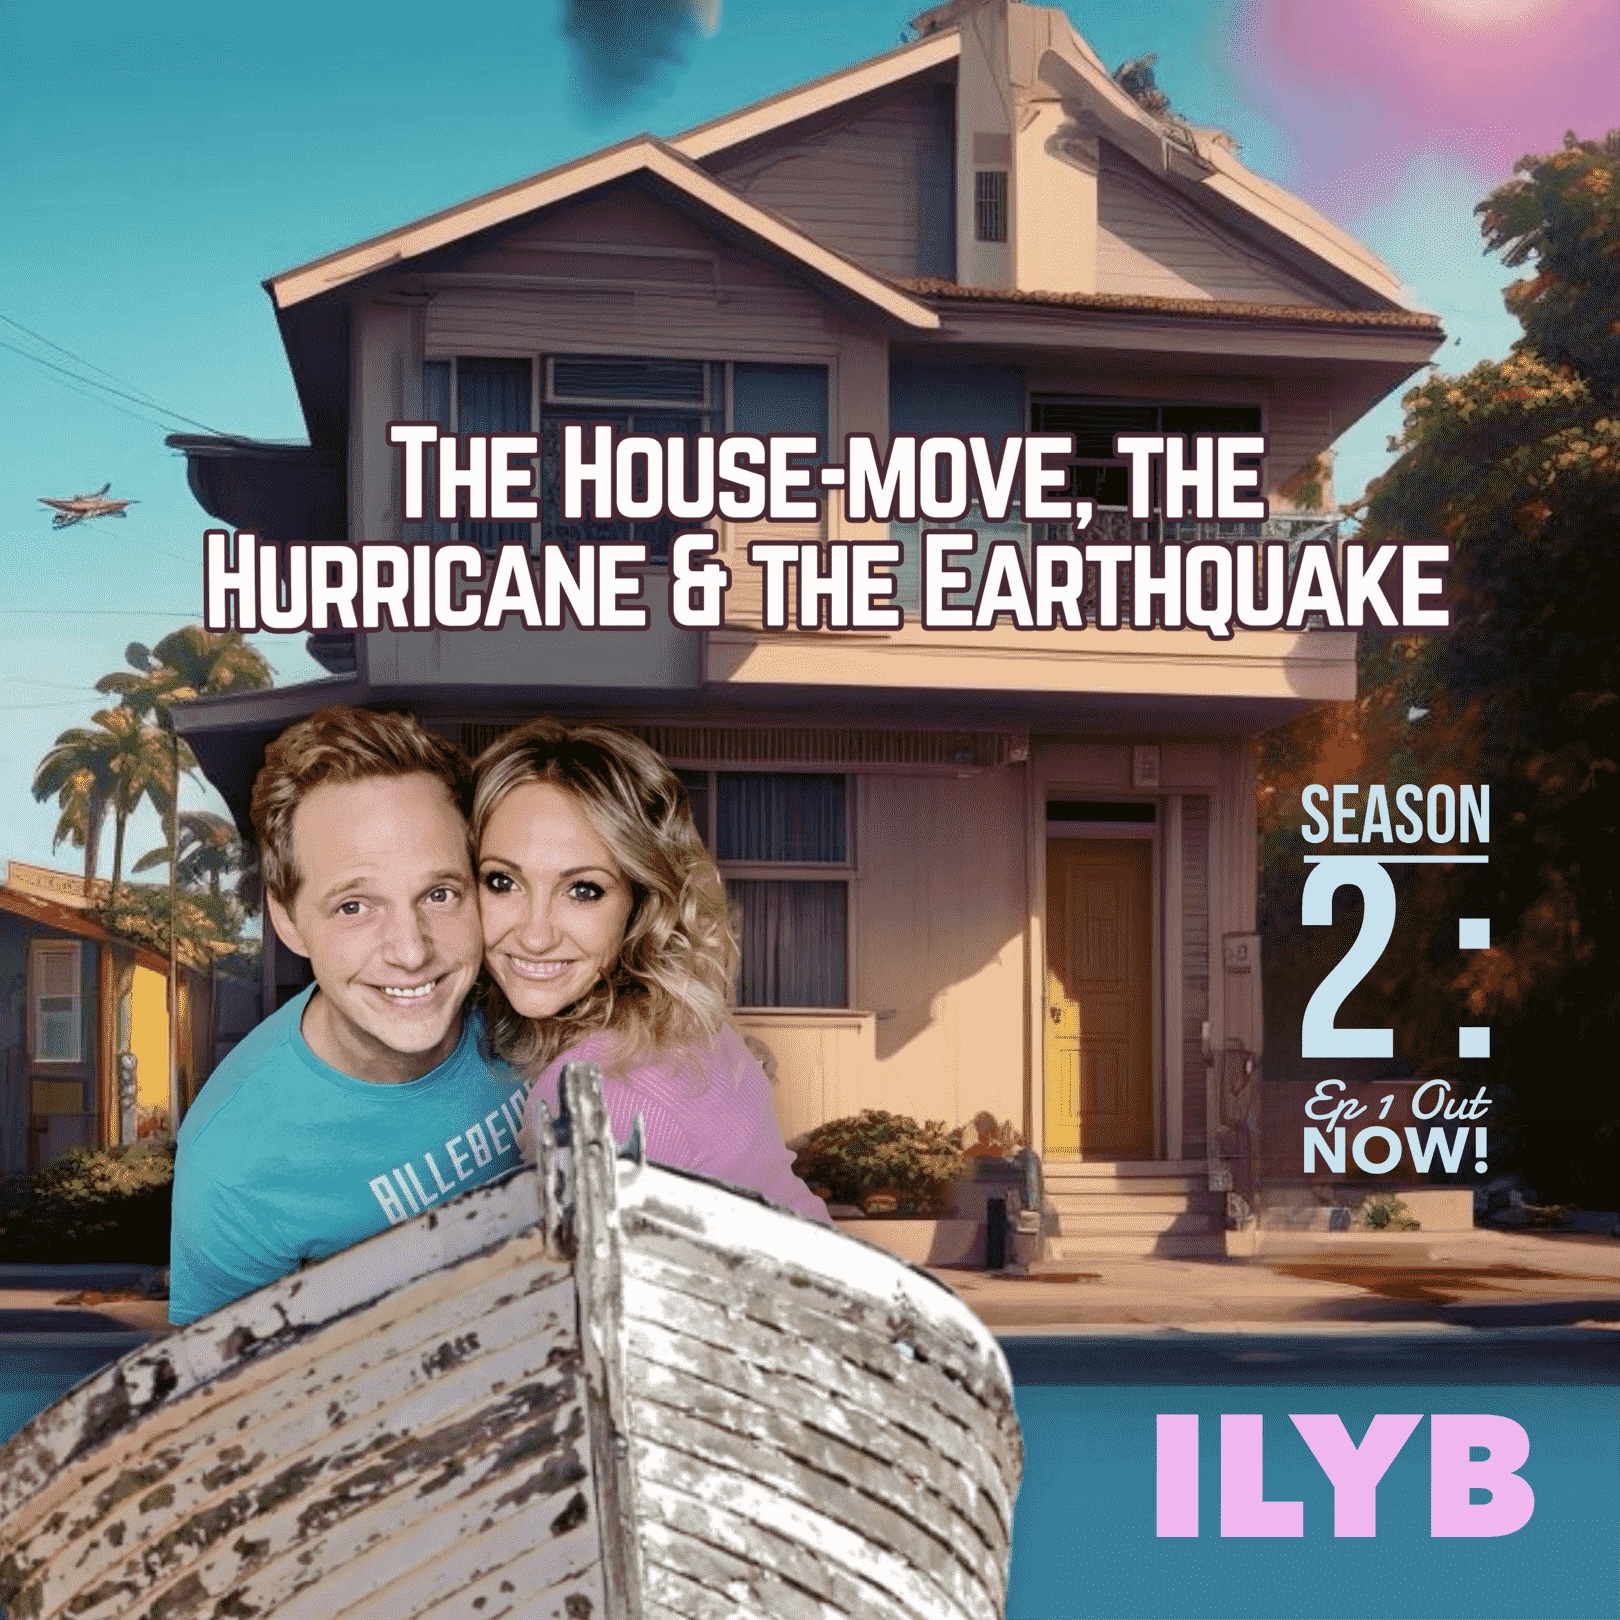 The House-move, the Hurricane & the Earthquake